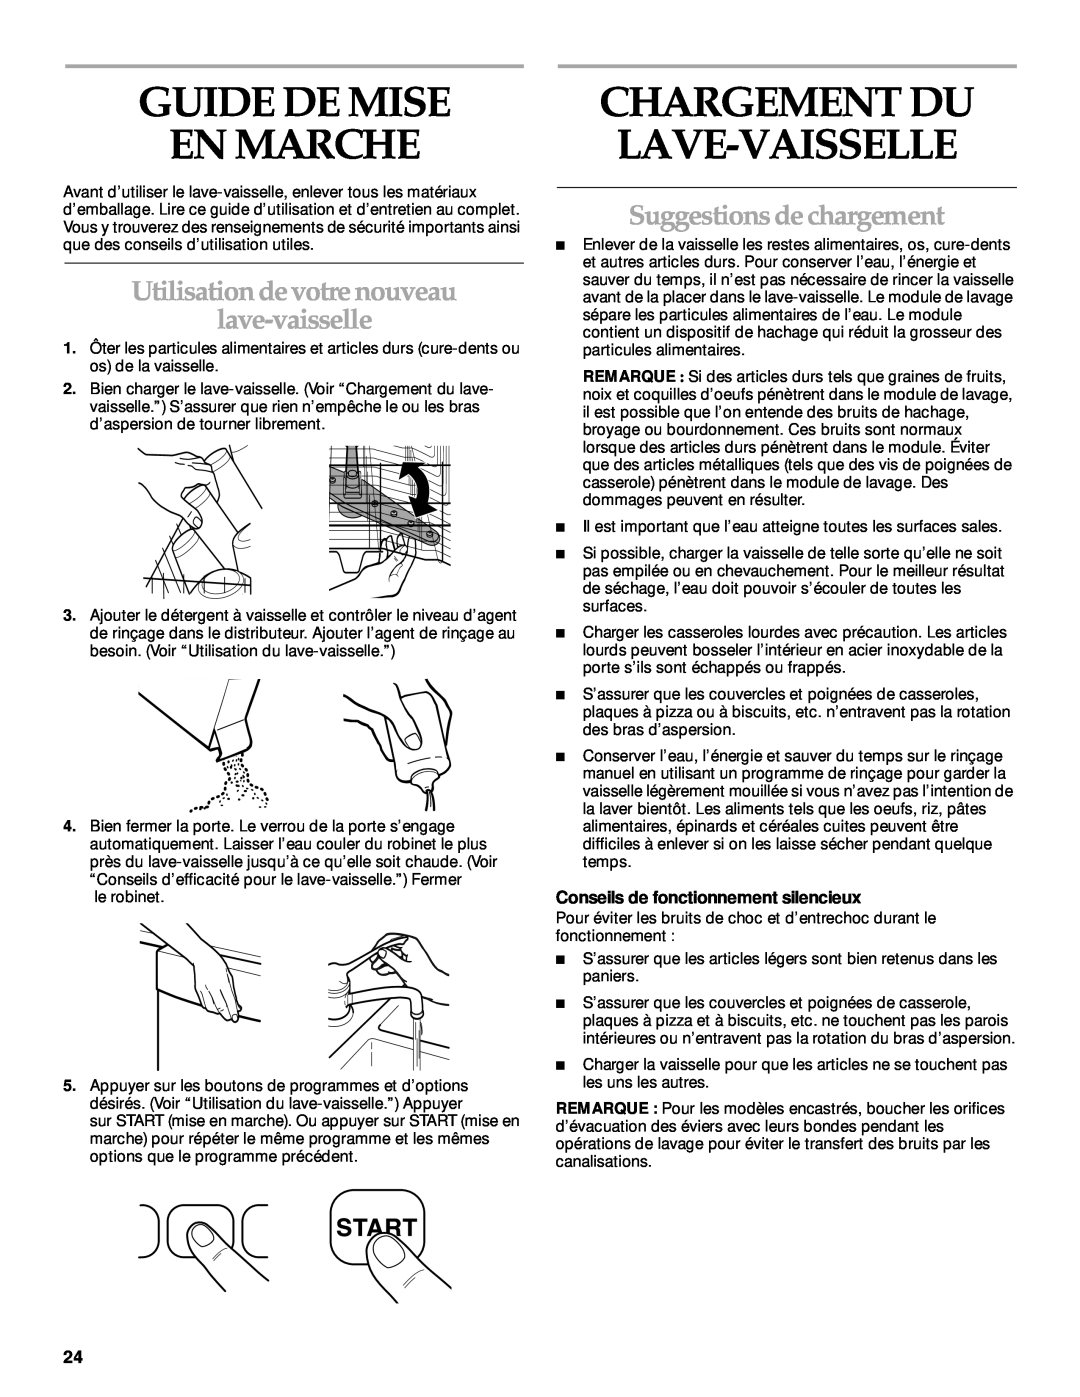 KitchenAid KUDP01TJ manual Guide De Mise En Marche, Utilisation de votre nouveau lave-vaisselle, Suggestions de chargement 